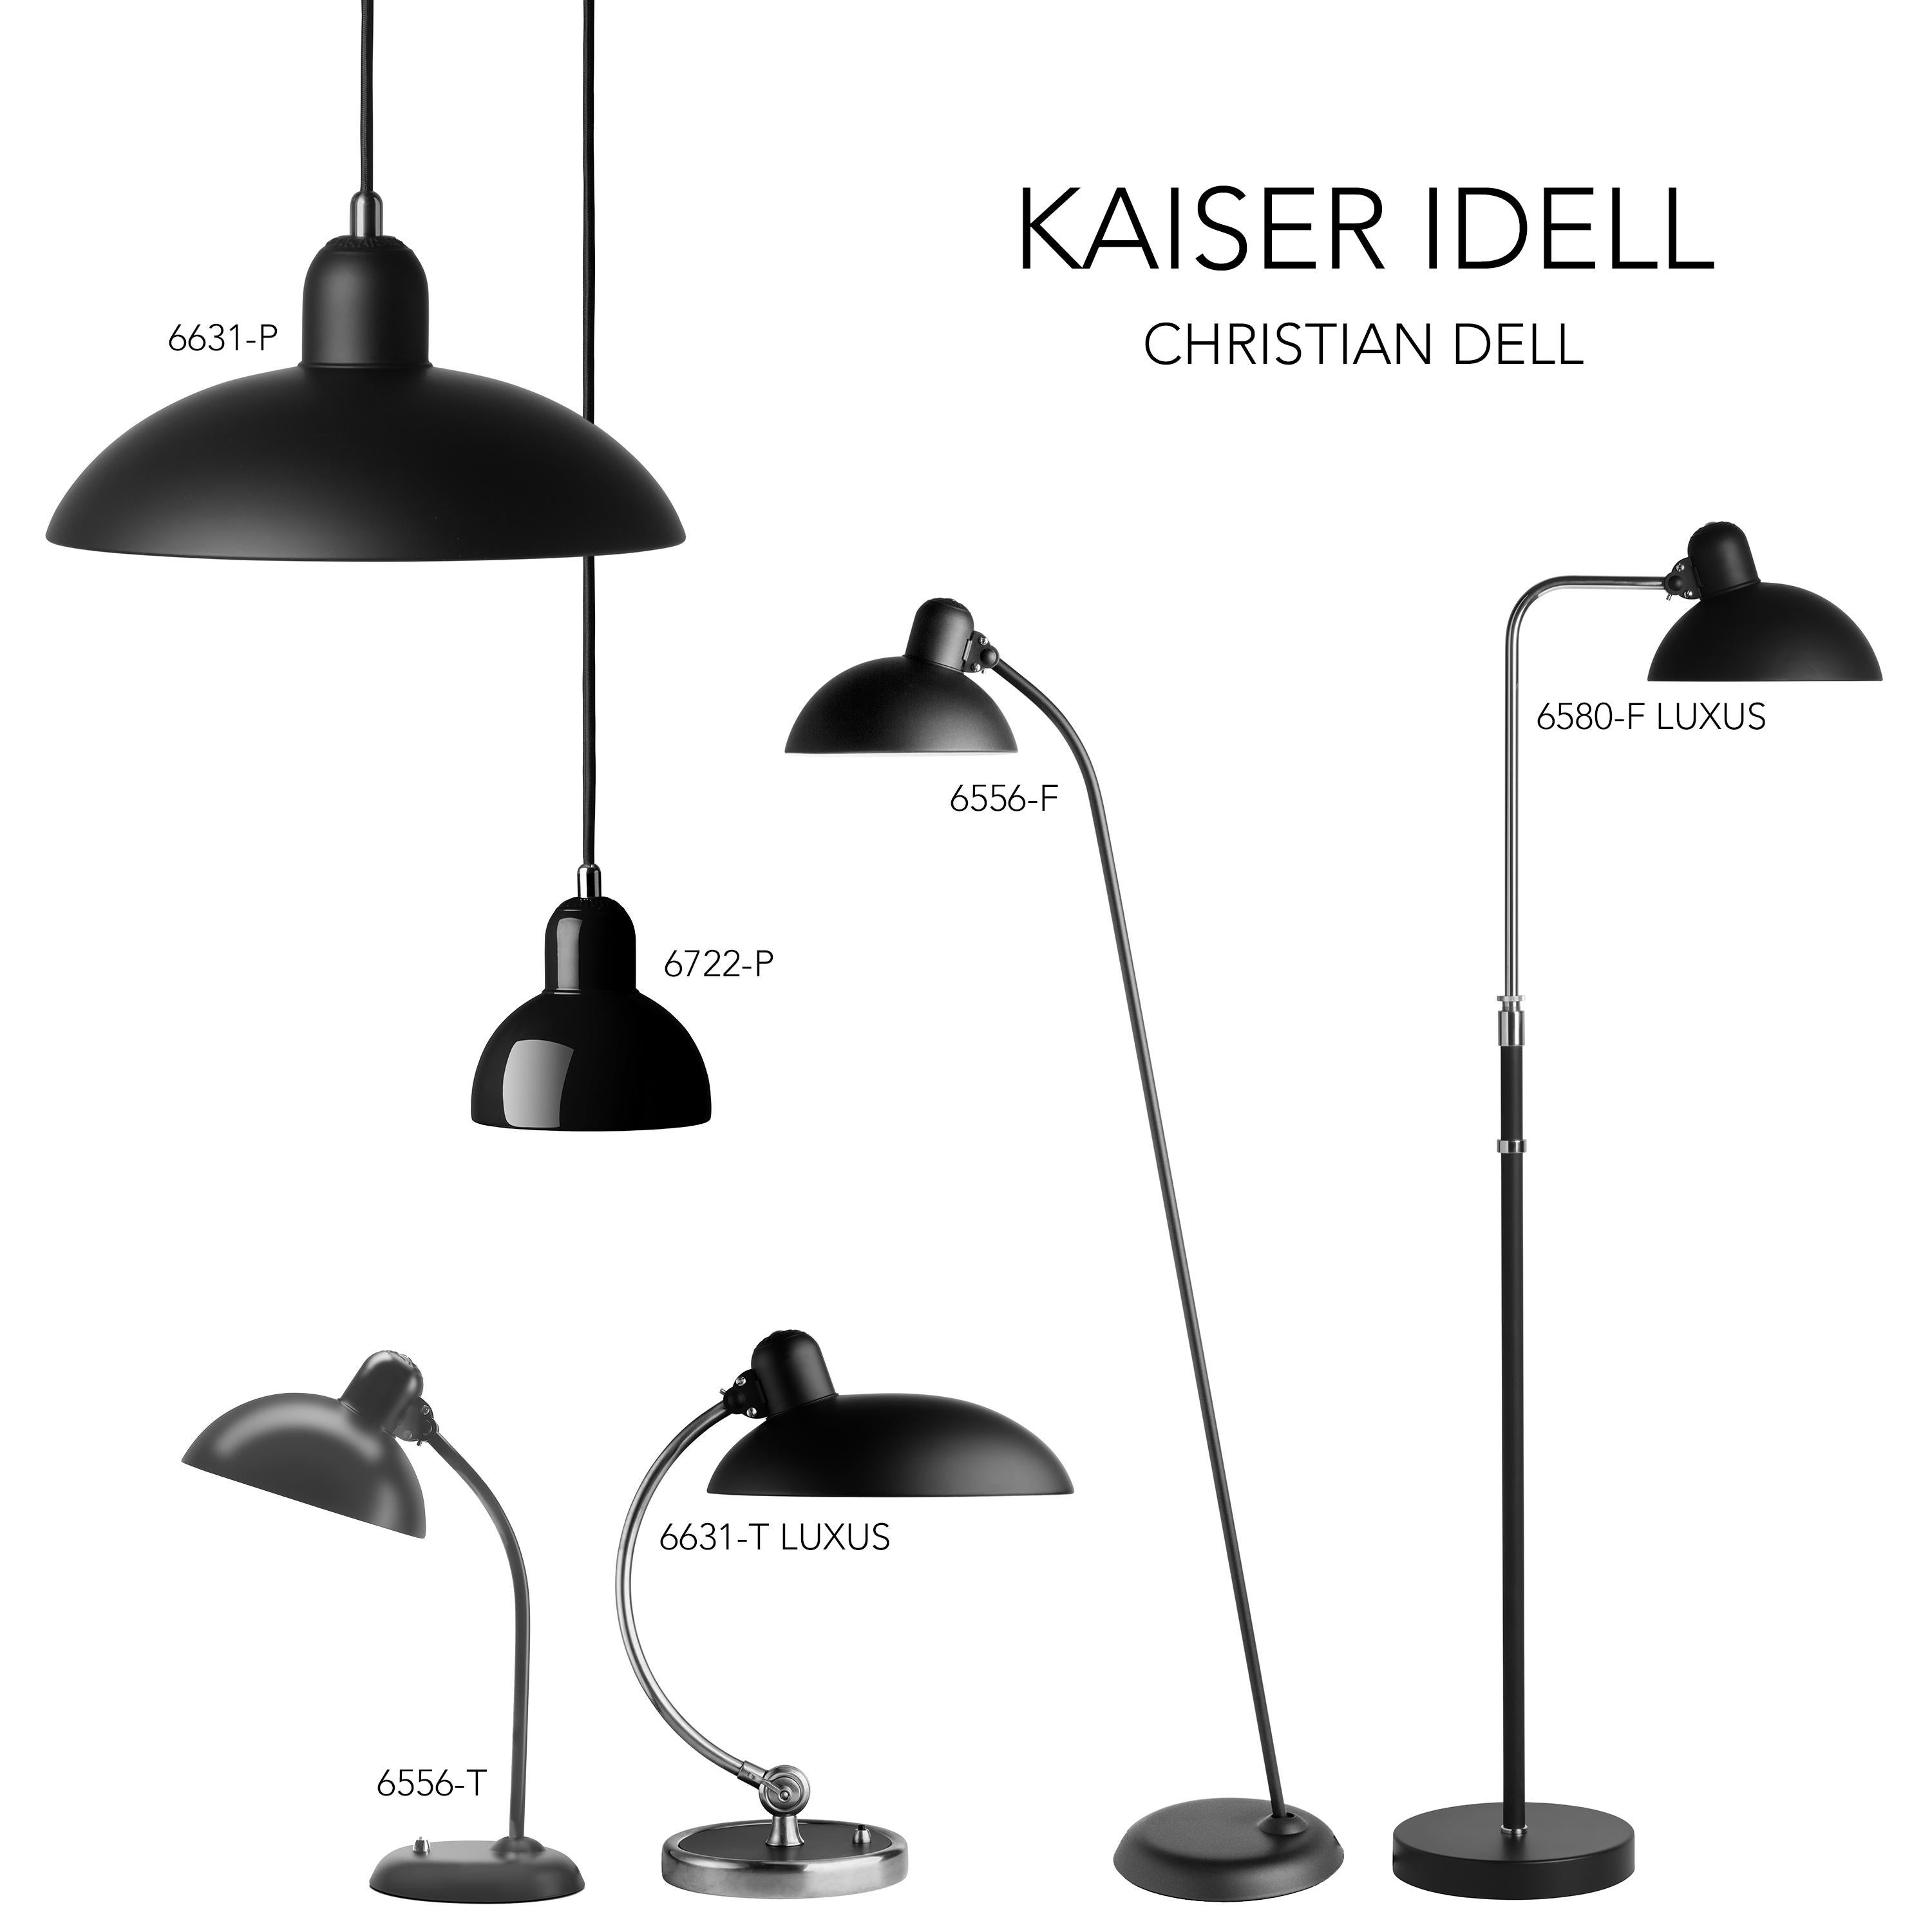 Christian Dell 'Kaiser Idell 6580-F' Floor Lamp for Fritz Hansen in Gloss Black For Sale 1